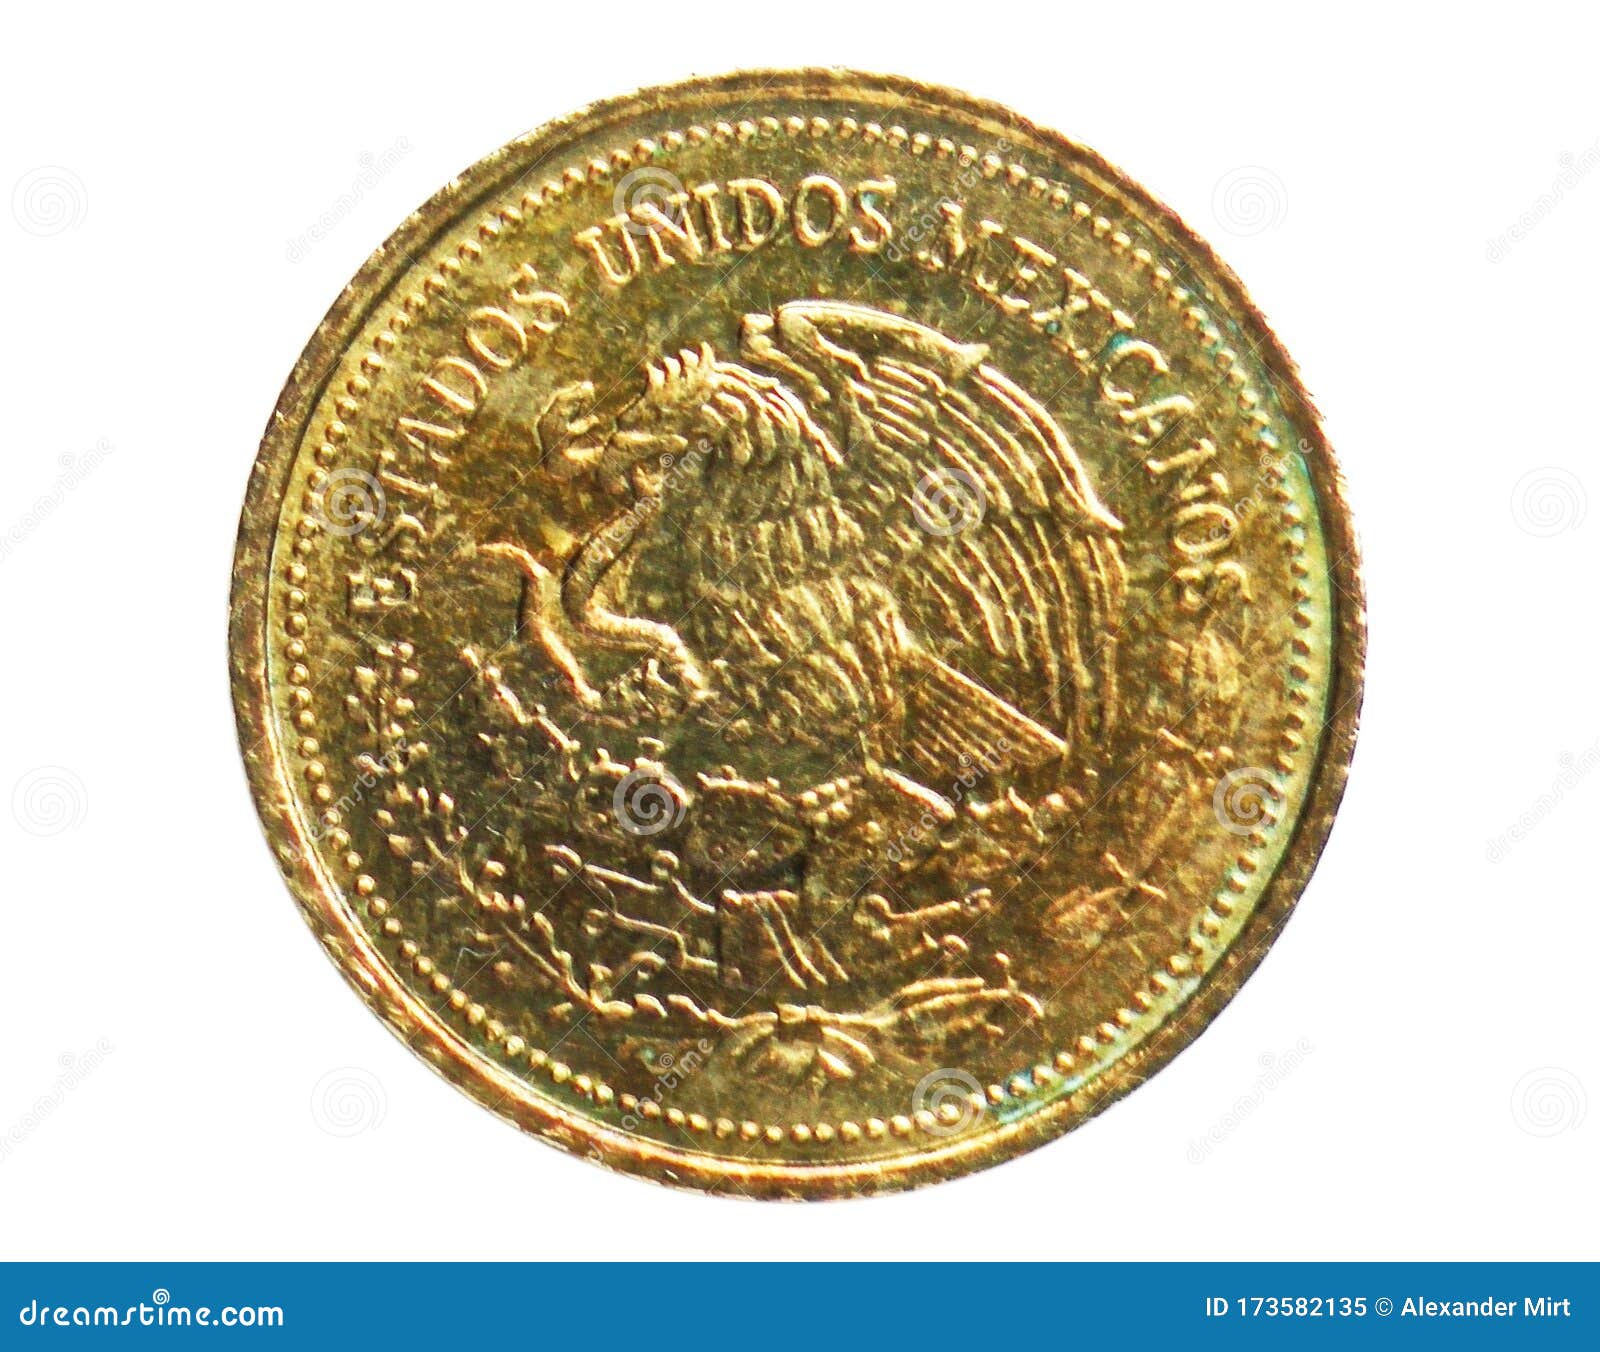 20 pesos guadalupe victoria coin, 1905~1992 - estados unidos mexicanos circulation serie, 1985. bank of mexico. reverse,